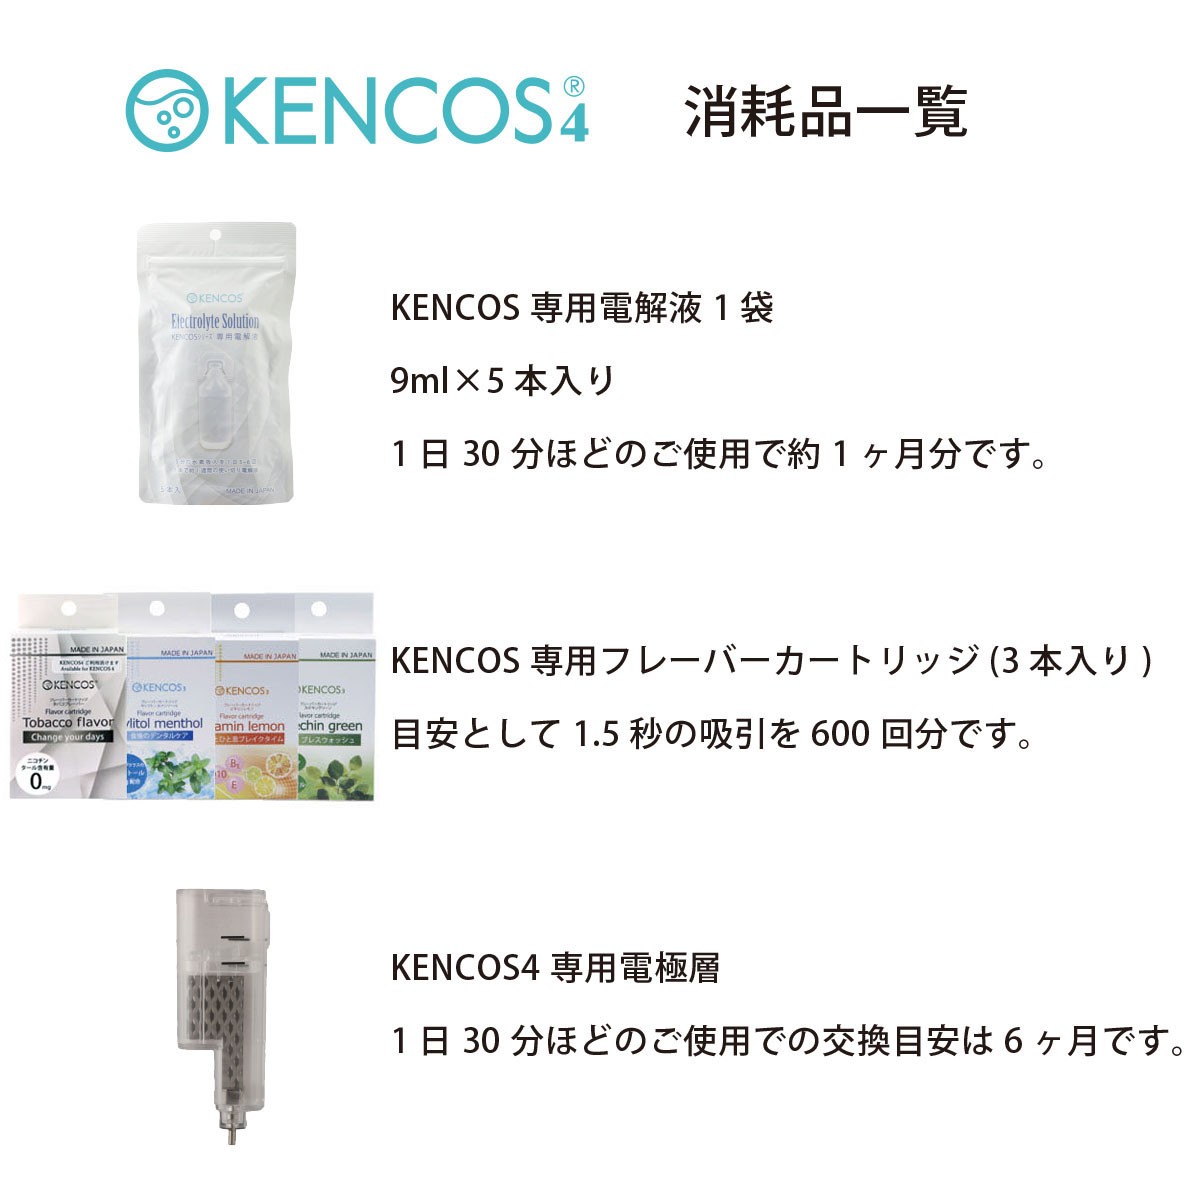 ケンコス4 KENCOS4 3点セット ホワイト (本体+電解液+タバコ風味